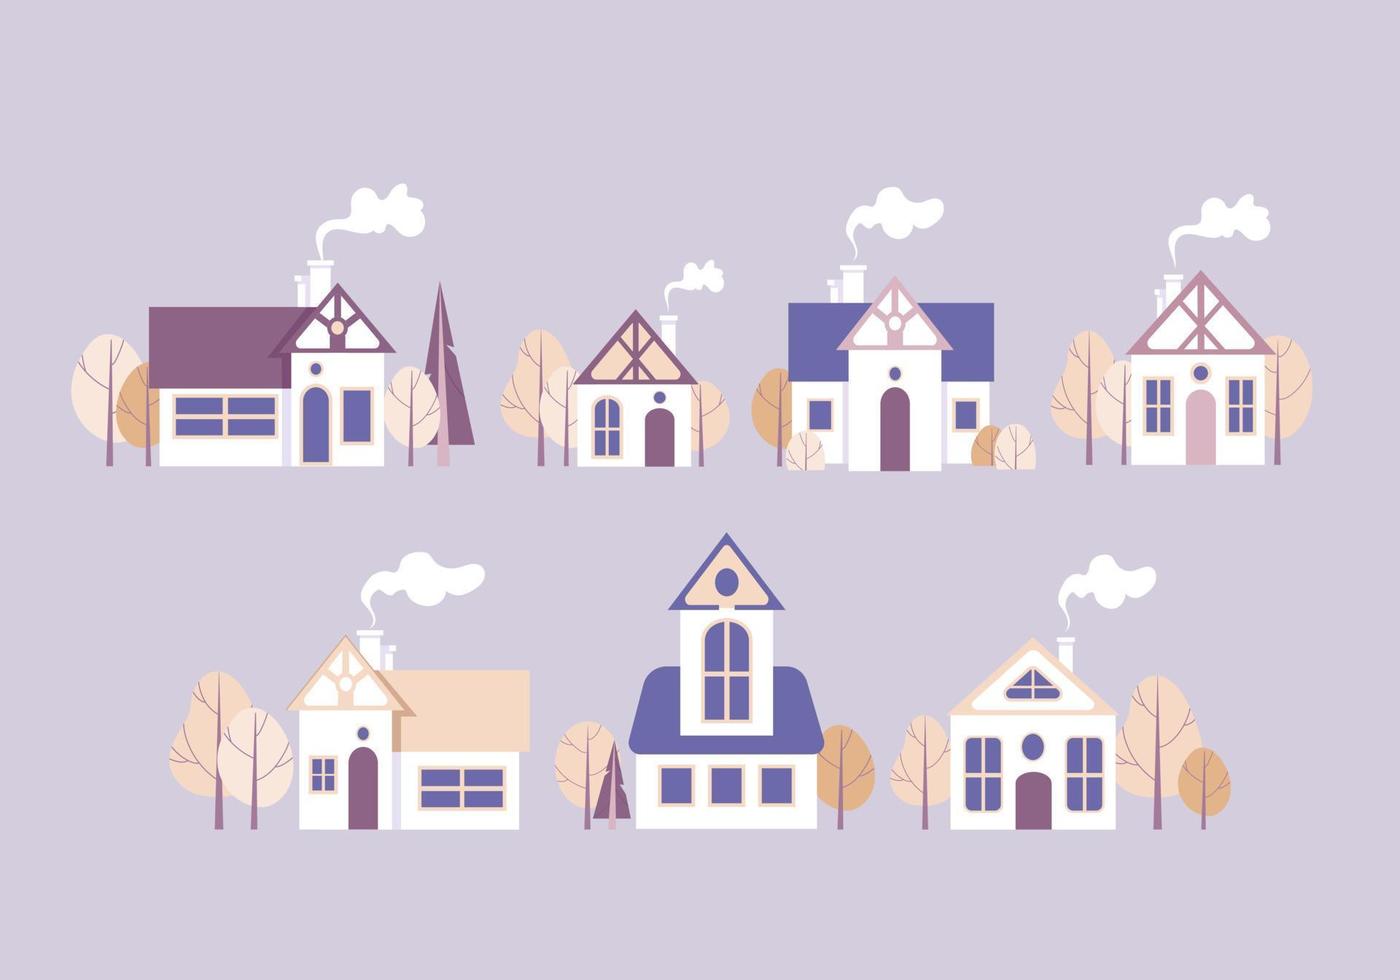 Set Cartoon-Häuser, Bäume im Herbst. Vektorillustration in zarten Pastellfarben. Abbildung, isolierte Objekte auf einem lila Hintergrund. Gestaltungselemente zu Themen wie Immobilien, Hypotheken, Architektur vektor